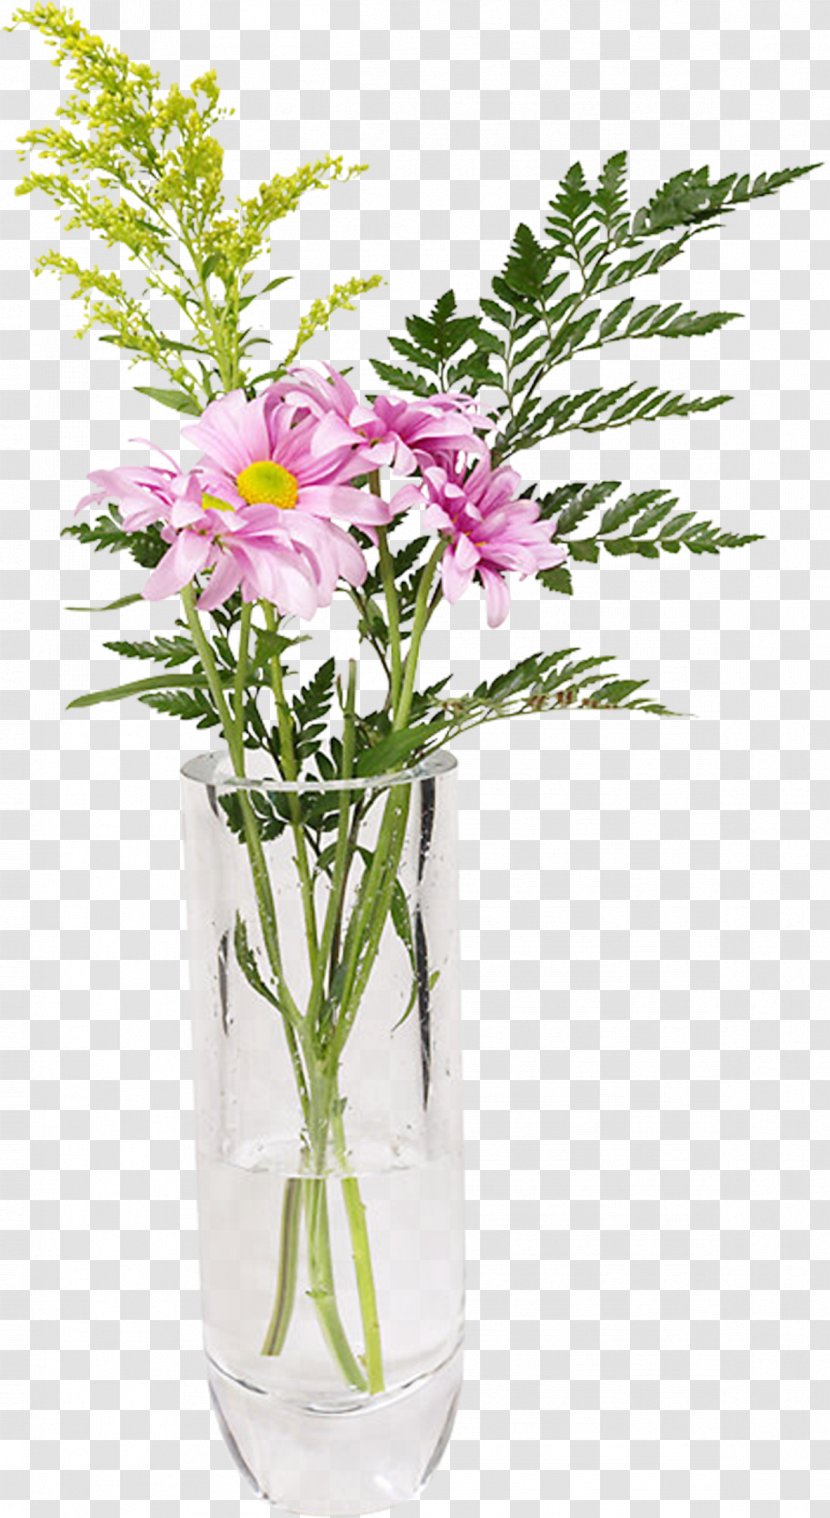 Flower Bouquet Vase Clip Art - Windows Photo Gallery Transparent PNG